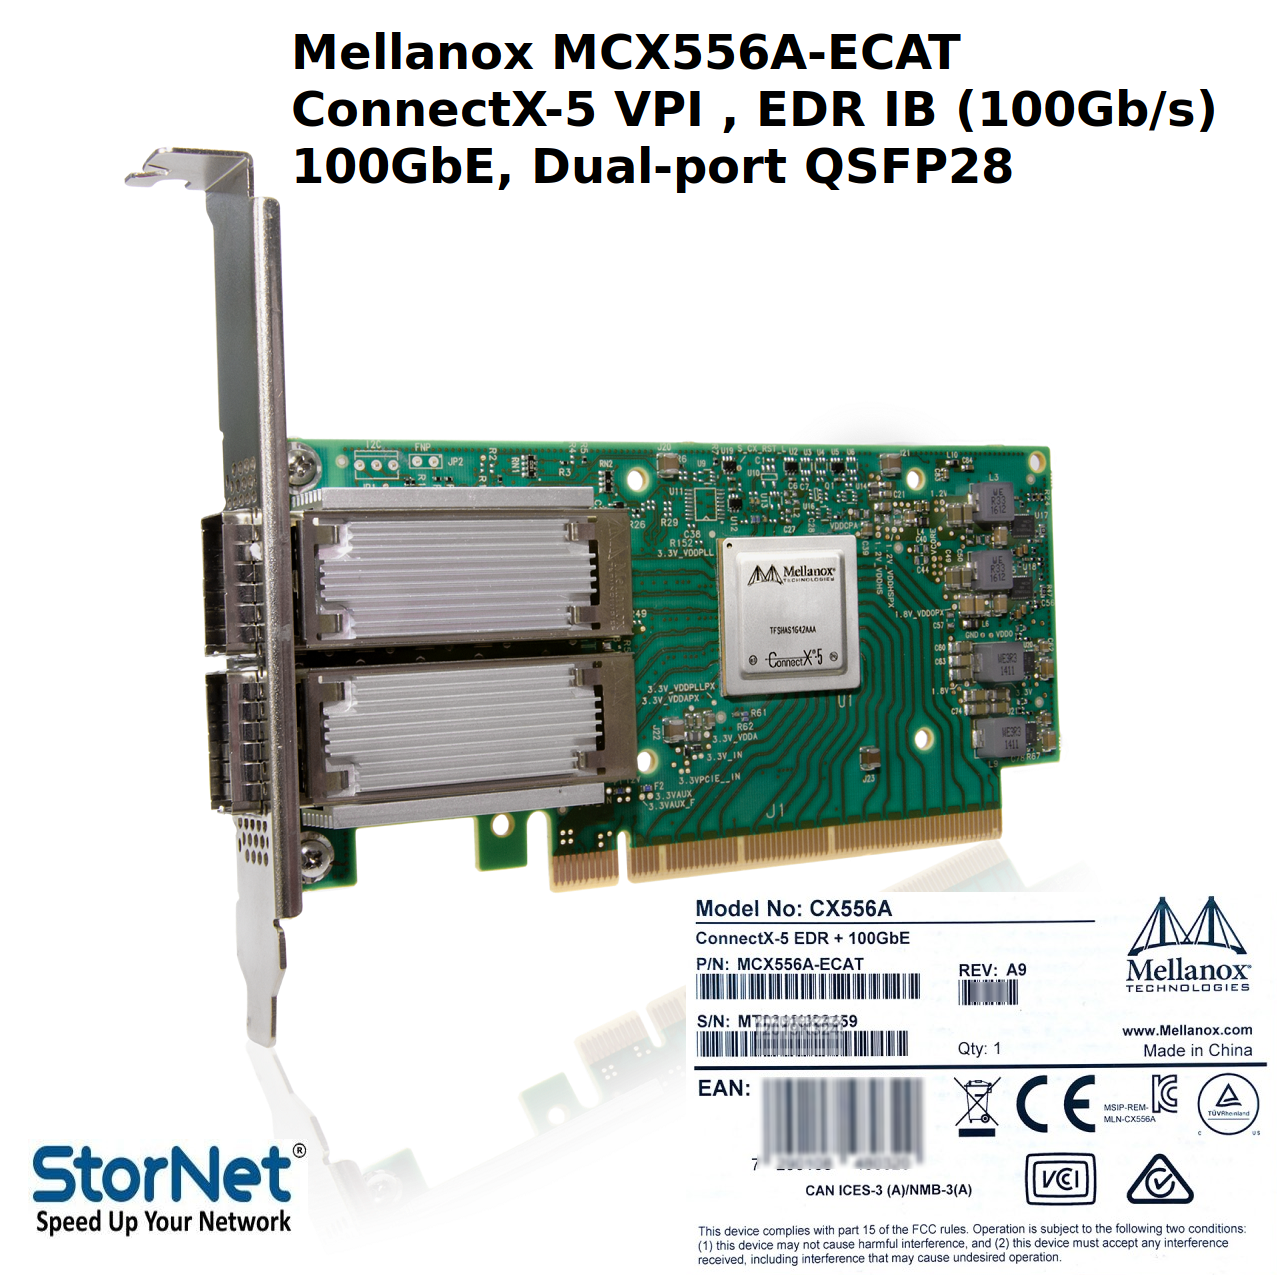 MCX556A-ECAT Nvidia Mellanox ConnectX-5 VPI EDR IB 100GbE dual-port QSFP28